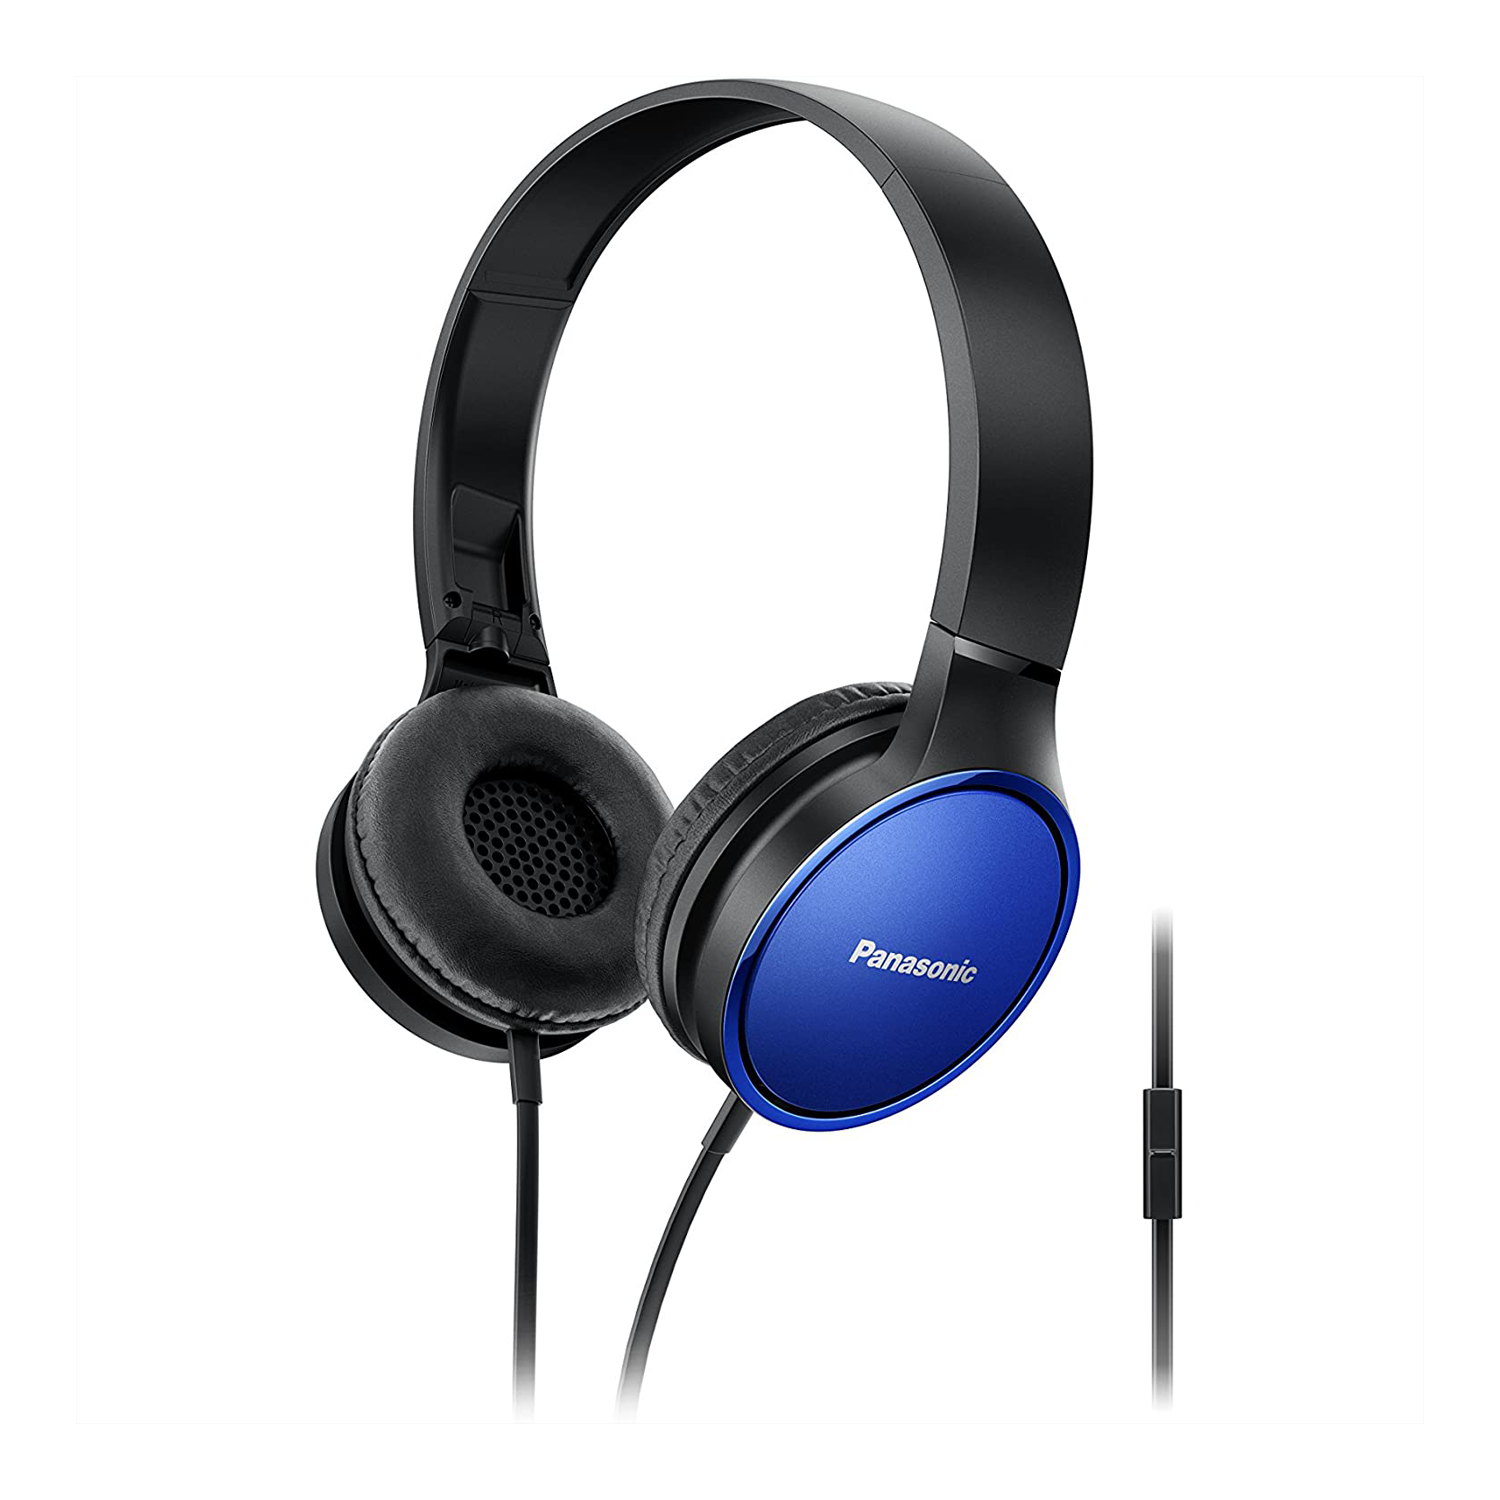 Sound Panasonic Premium sur les écouteurs stéréo EAR RP-HF300M avec micro et contrôleur intégrés - Bleu